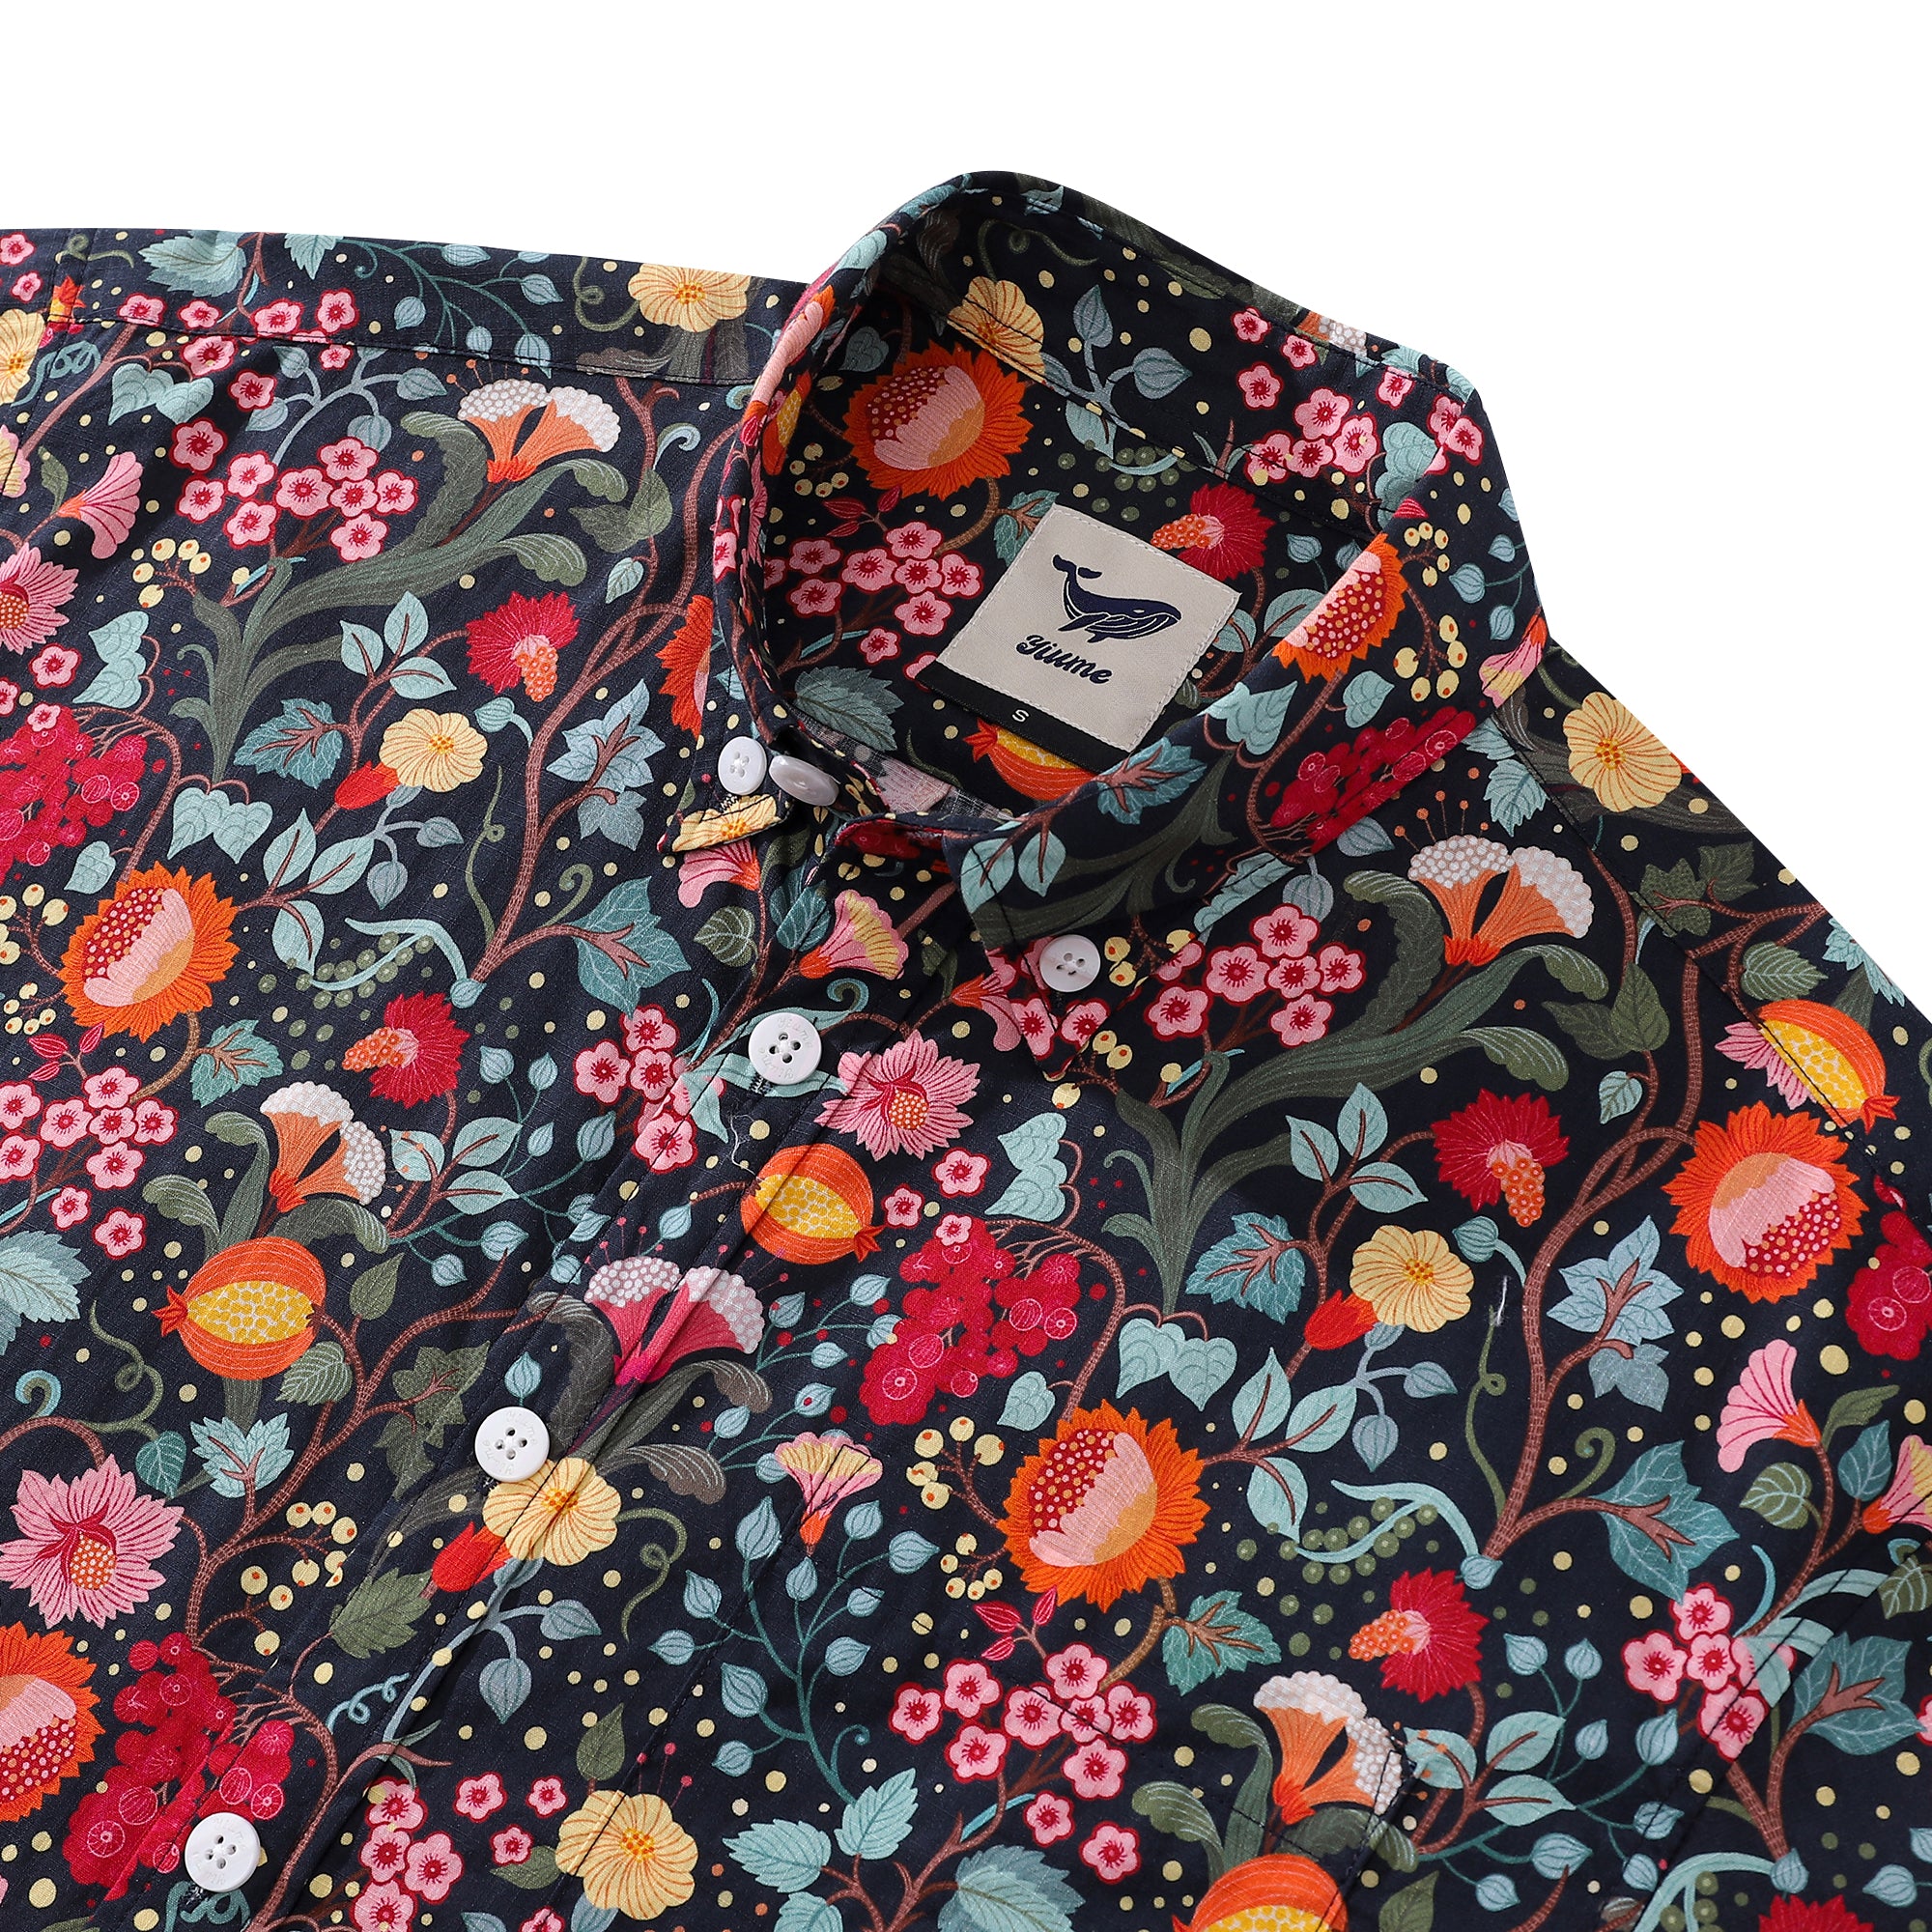 Men's Hawaiian Shirt 1960s Vintage Flower Garden Print Cotton Button-down Short Sleeve Aloha Shirt